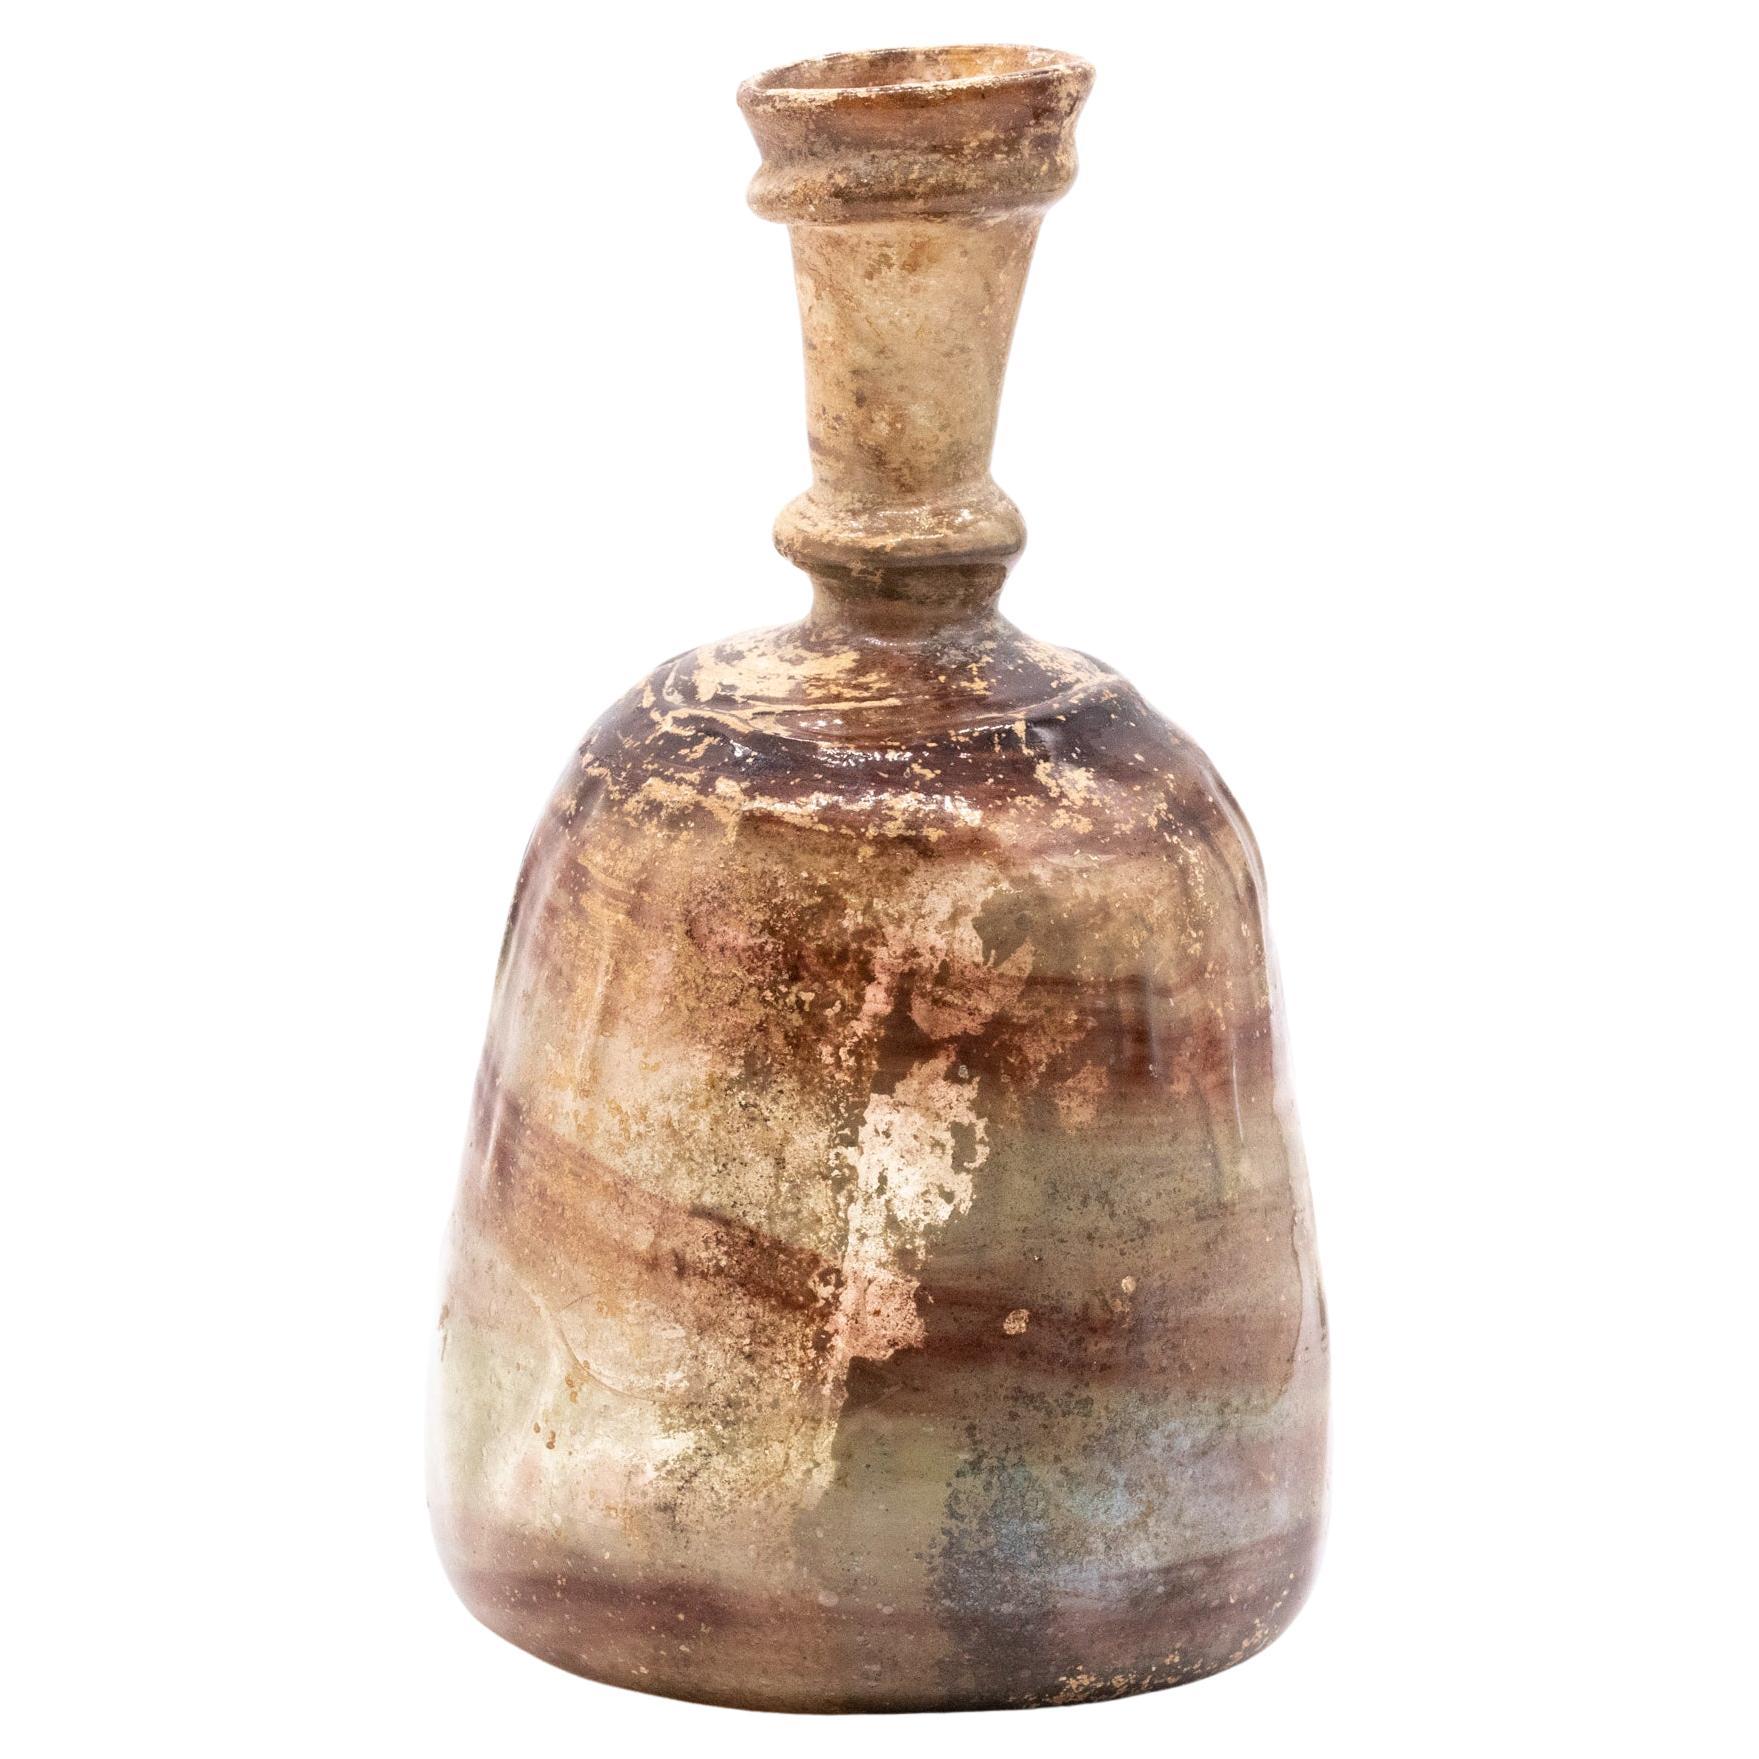 Flacon saupoudreur romain 100-400 ADS en verre verdâtre ancien en parfait état de conservation